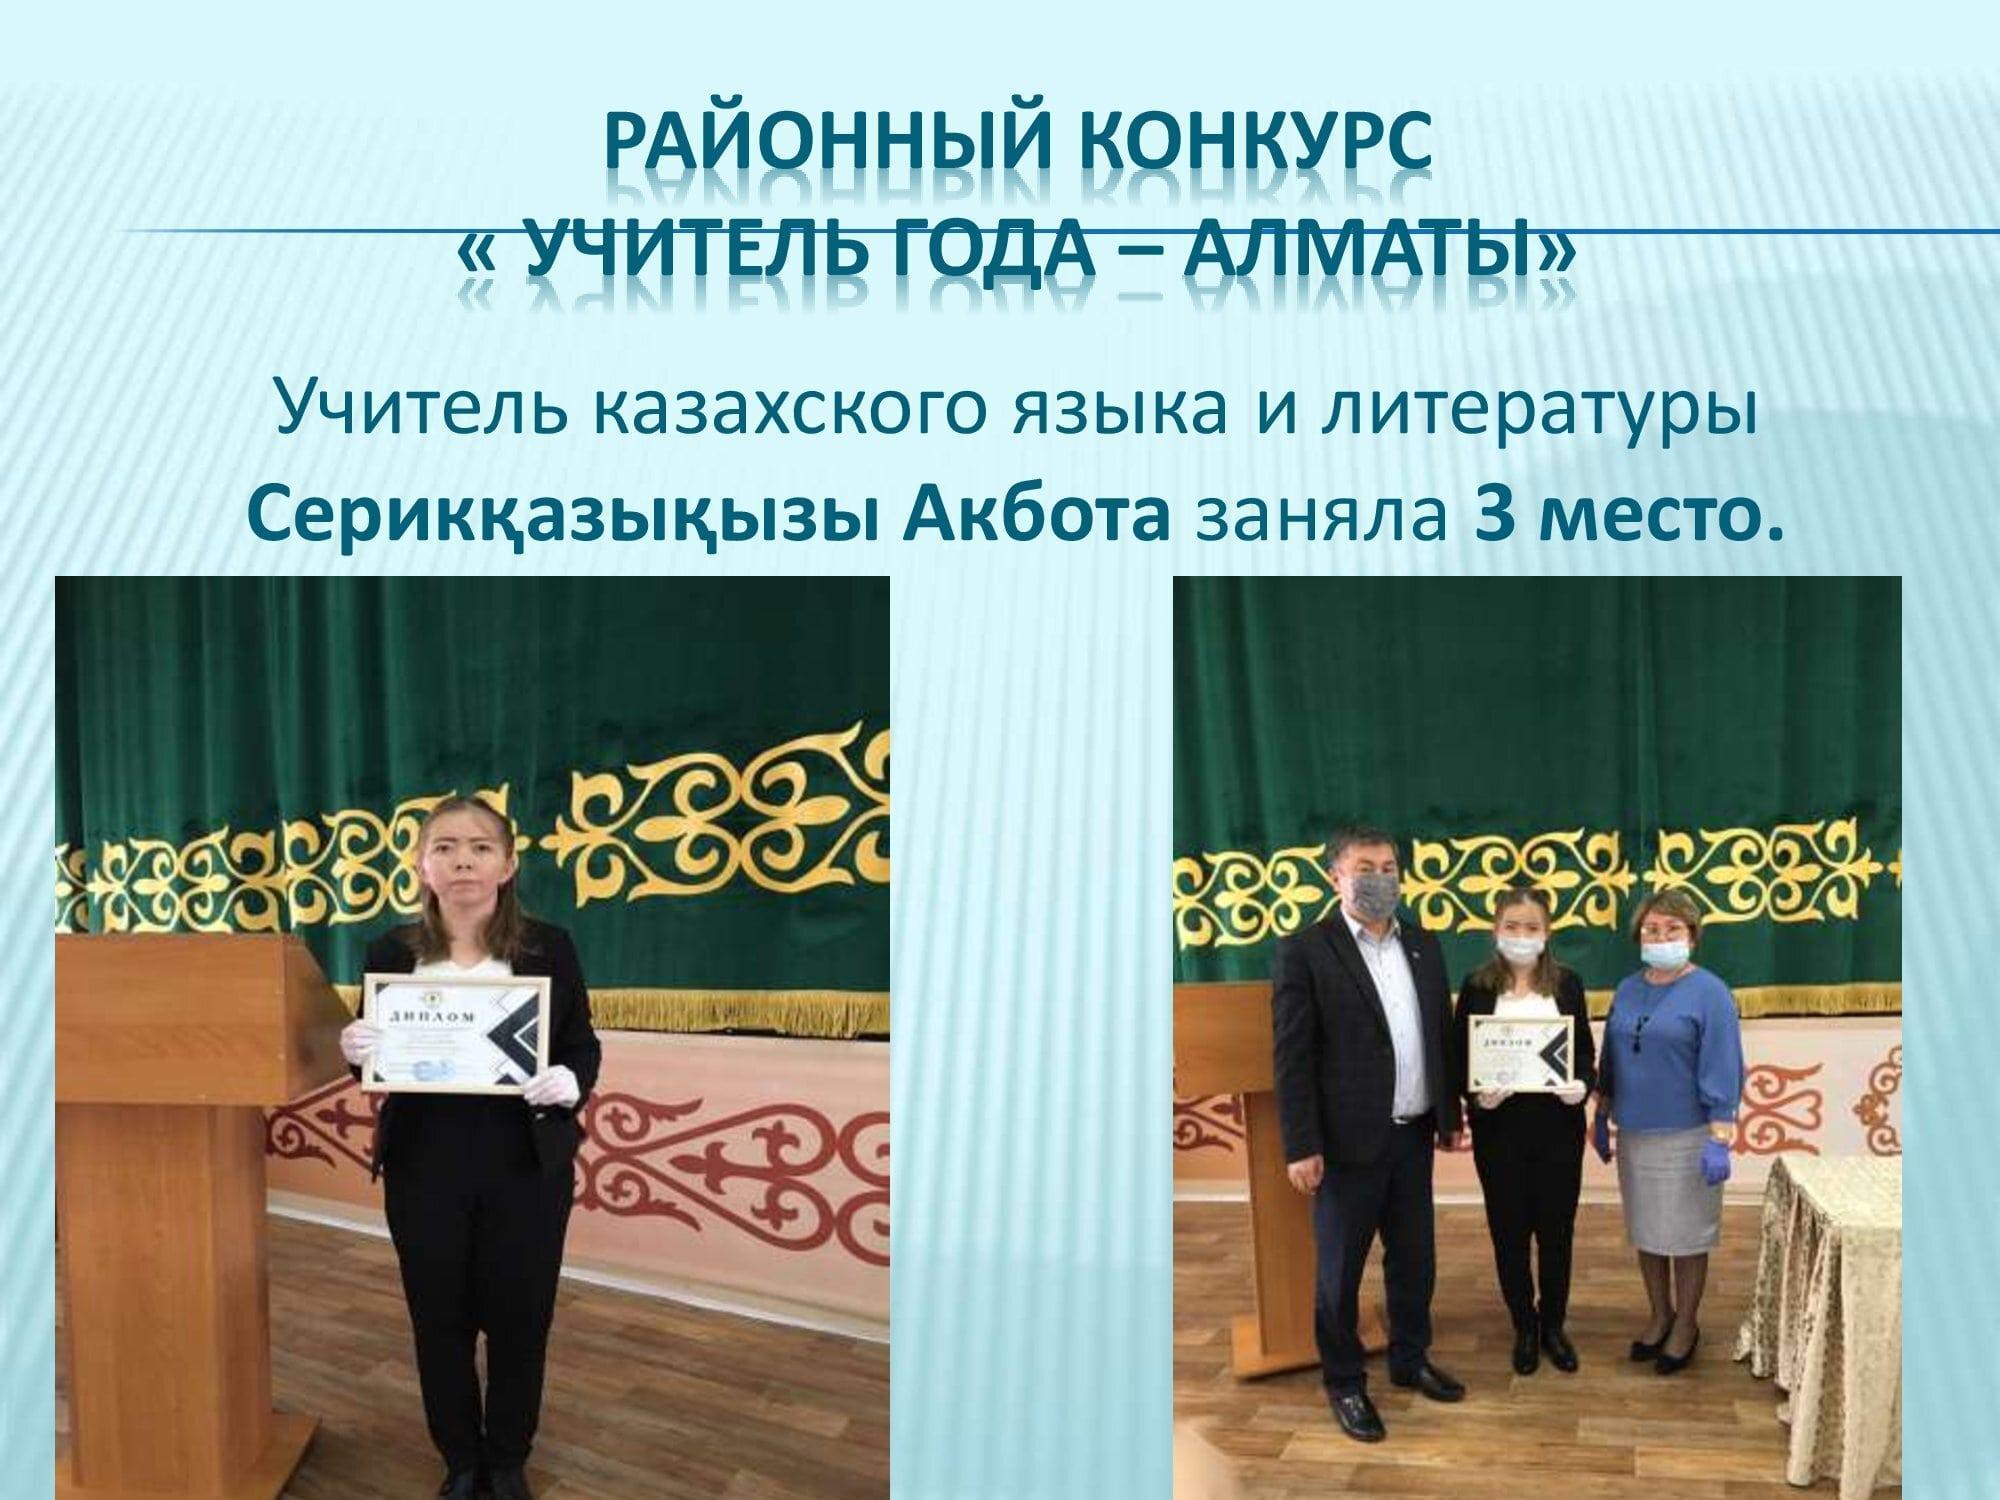 Районный конкурс « Учитель года – Алматы»